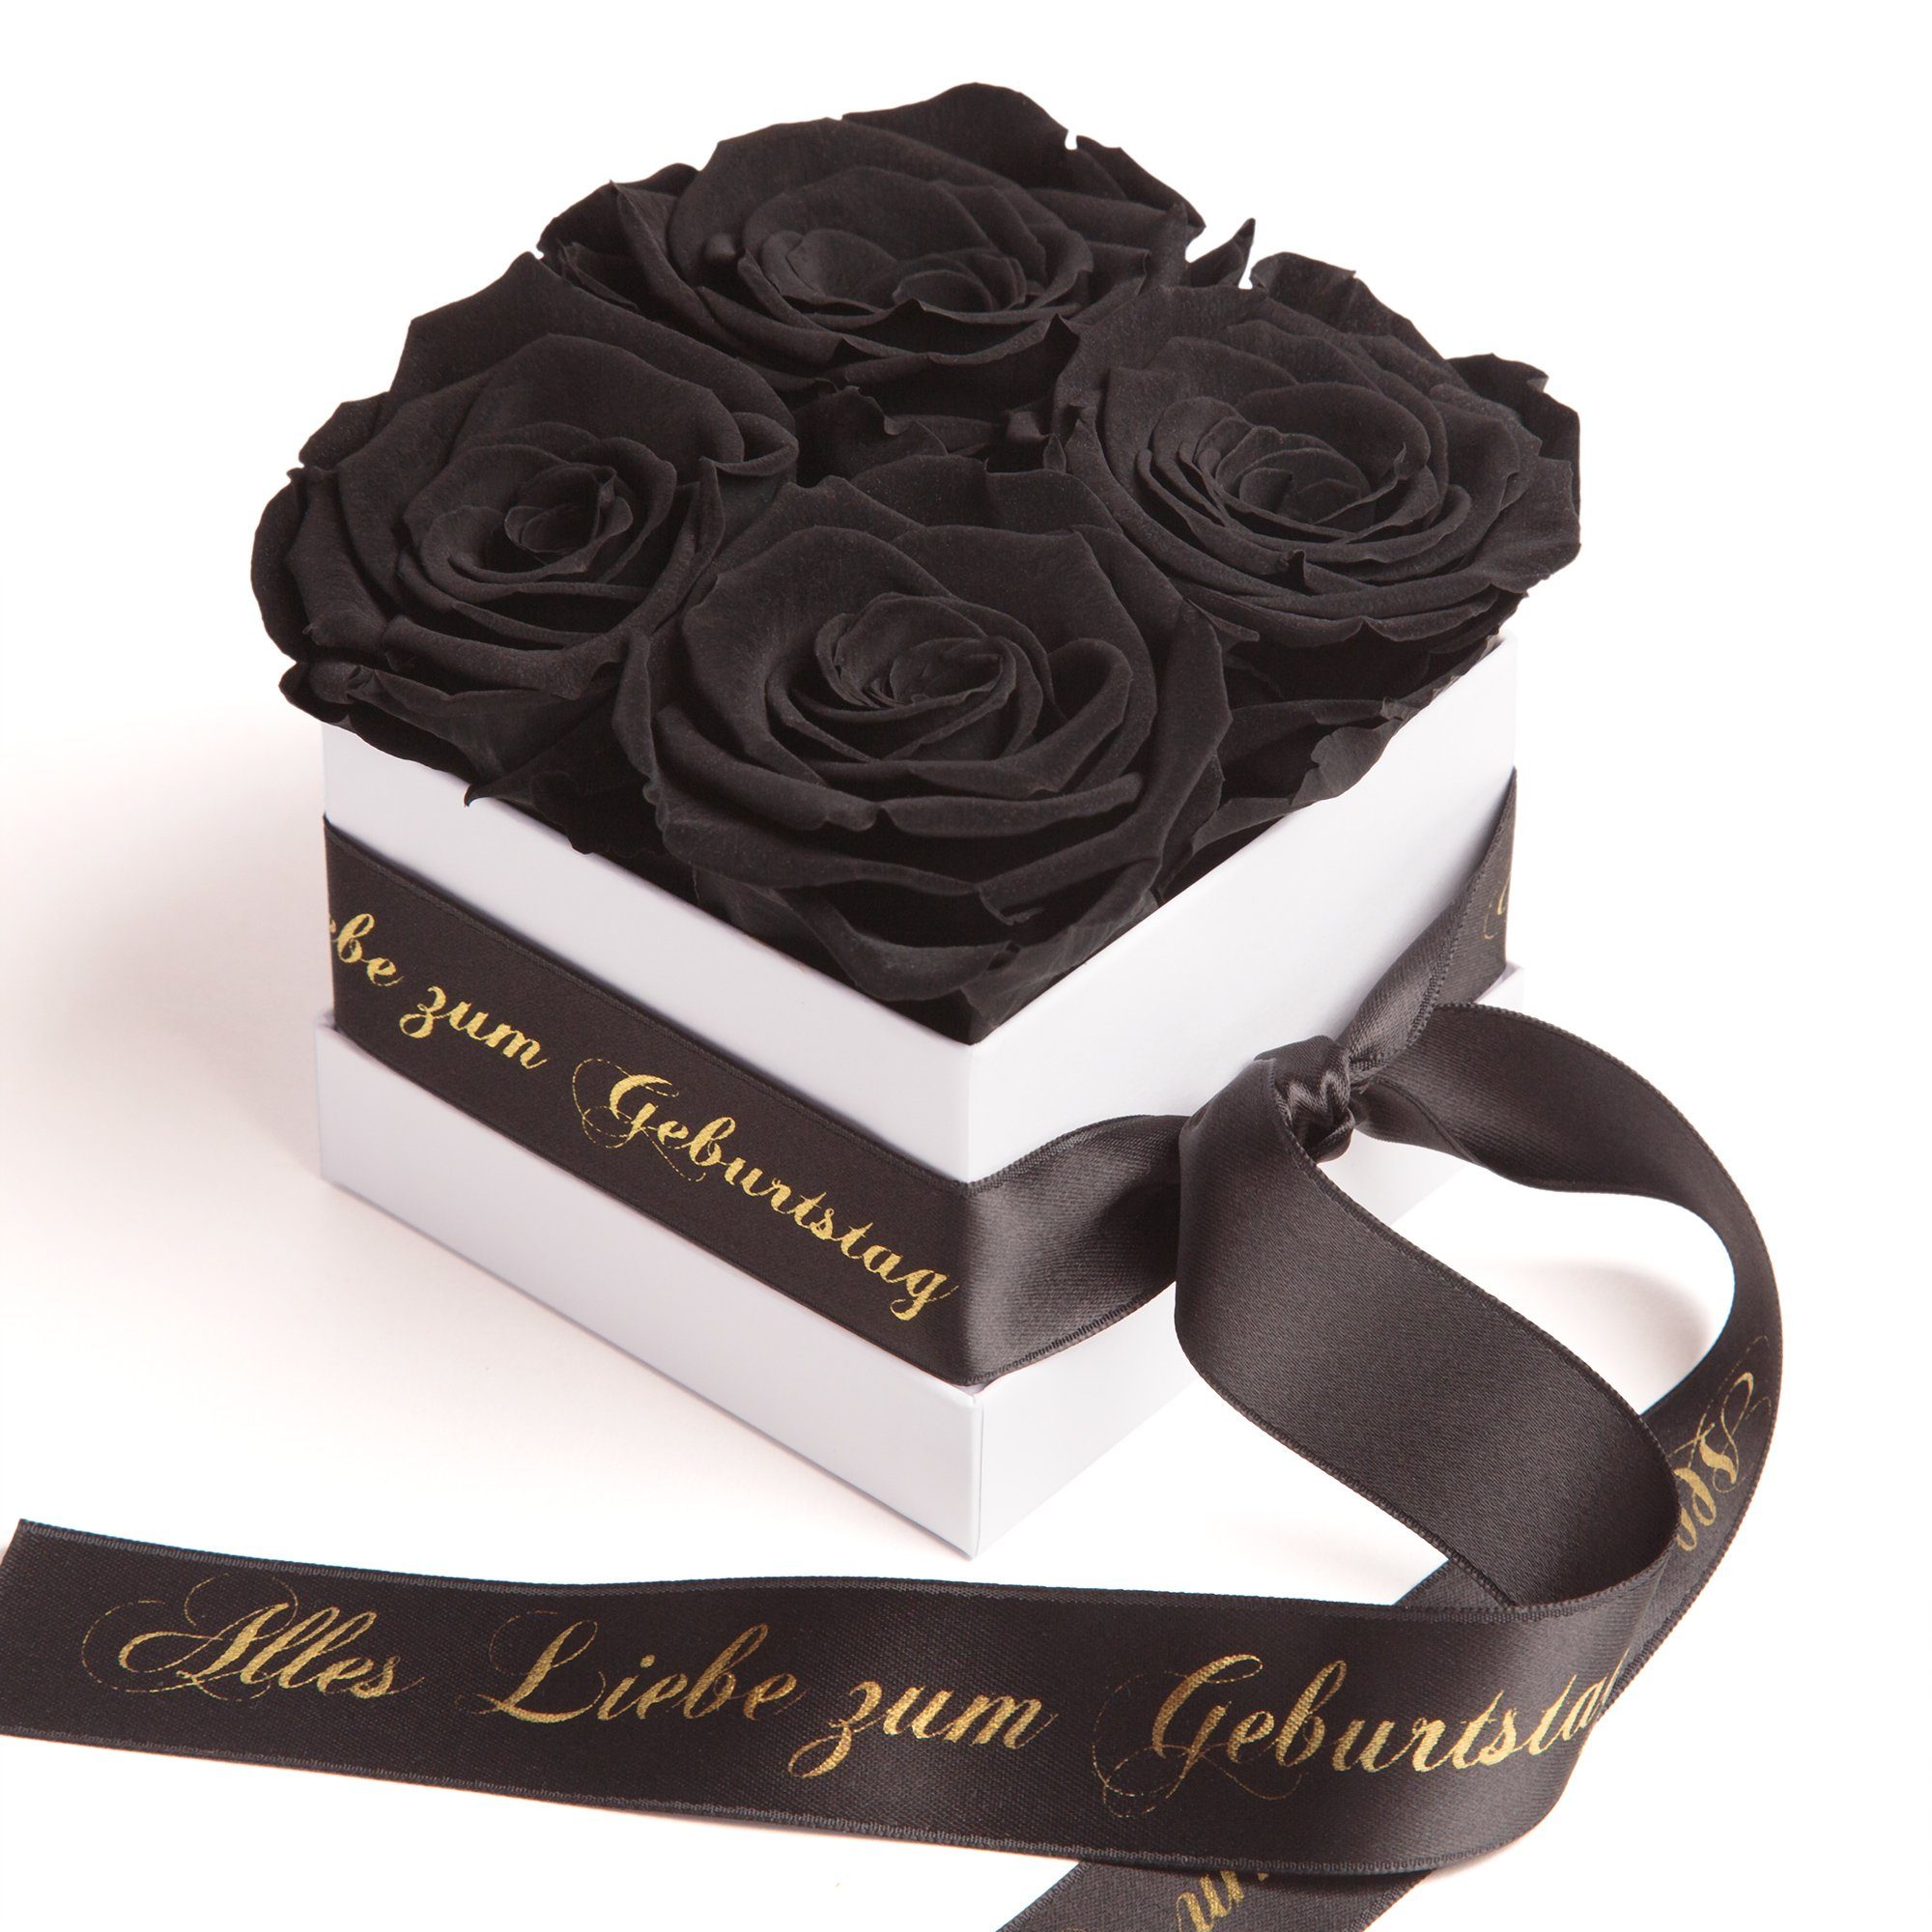 Liebe zum haltbar schwarz Infinity Alles zu Rosenbox Dekoobjekt Geschenk, bis 3 Heidelberg Geburtstag Blumen ROSEMARIE Jahre Echte SCHULZ Rose